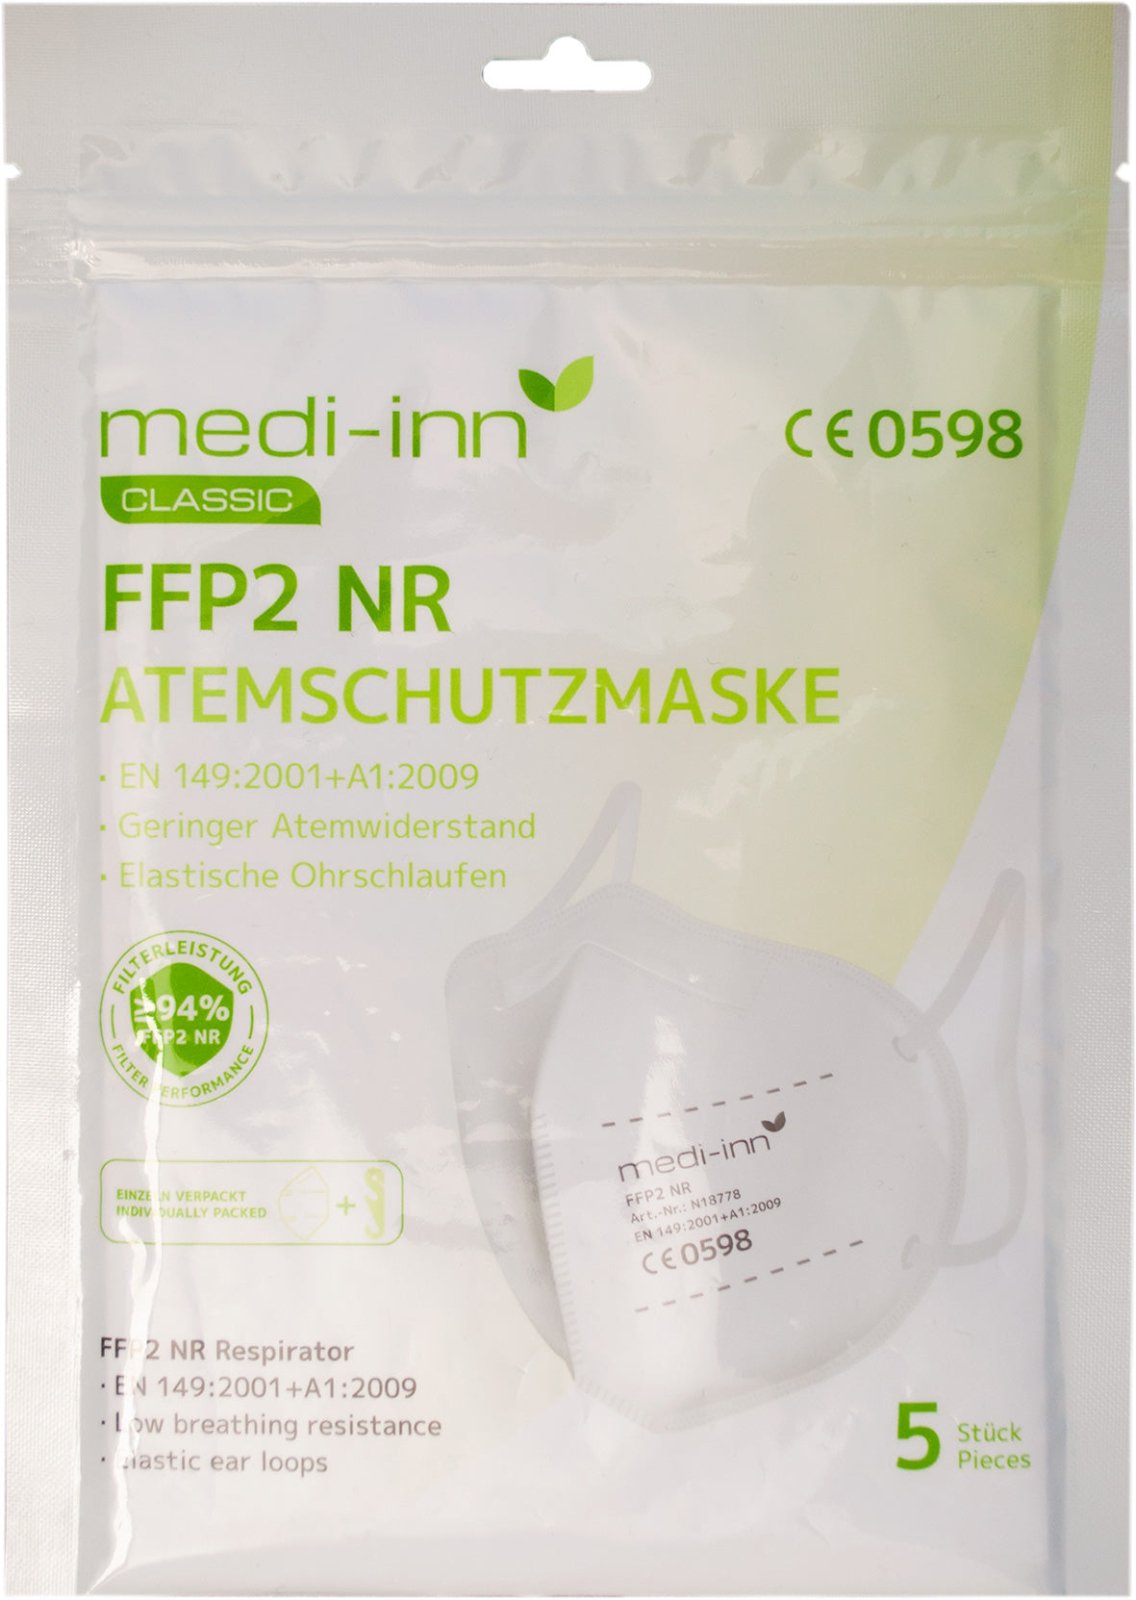 Medi-Inn Atemschutzmasken FFP2 weiß ohne Ventil 4-lagig